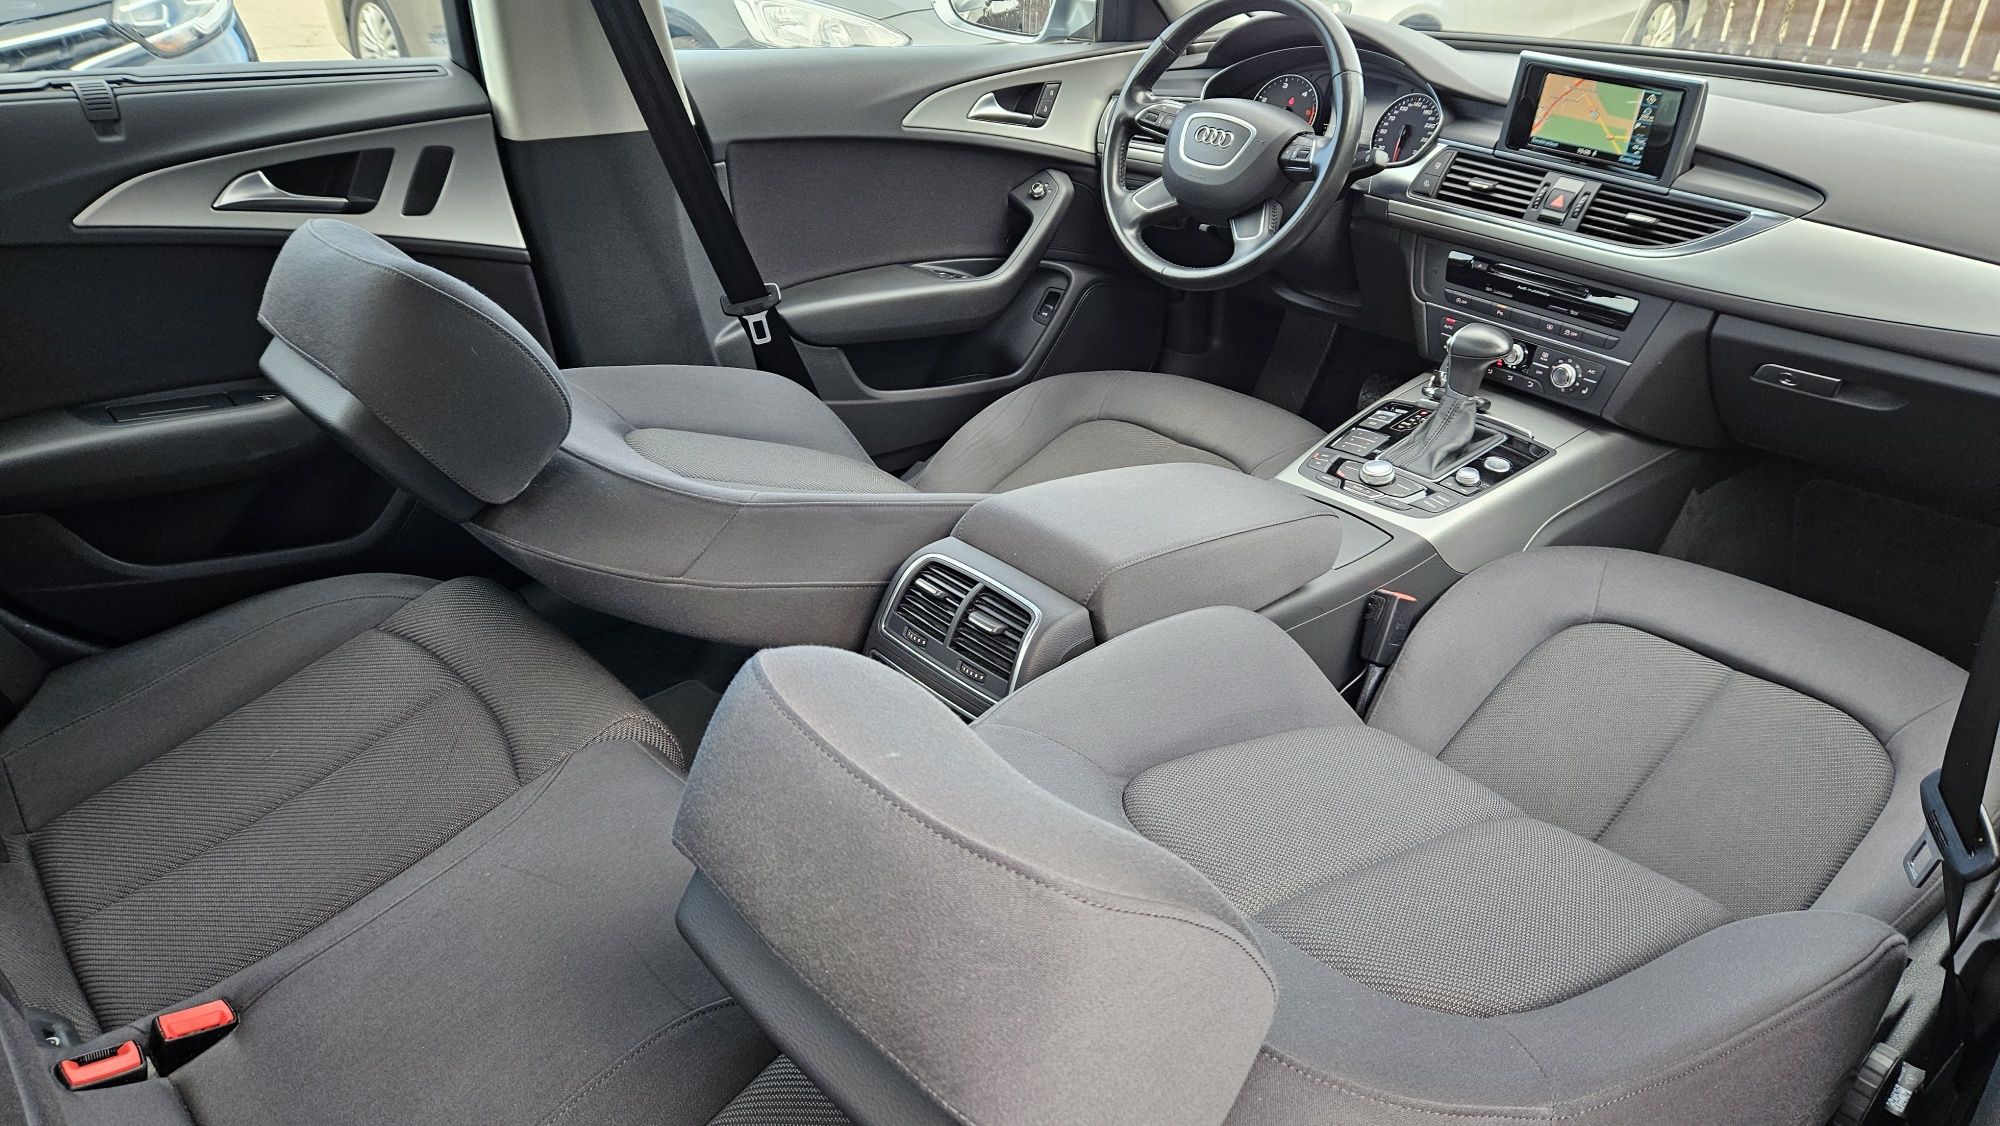 Audi A6 2.0 Tdi 190 Cp Euro 6 2014.10 Automata-Xenon Led-Navi-Clima